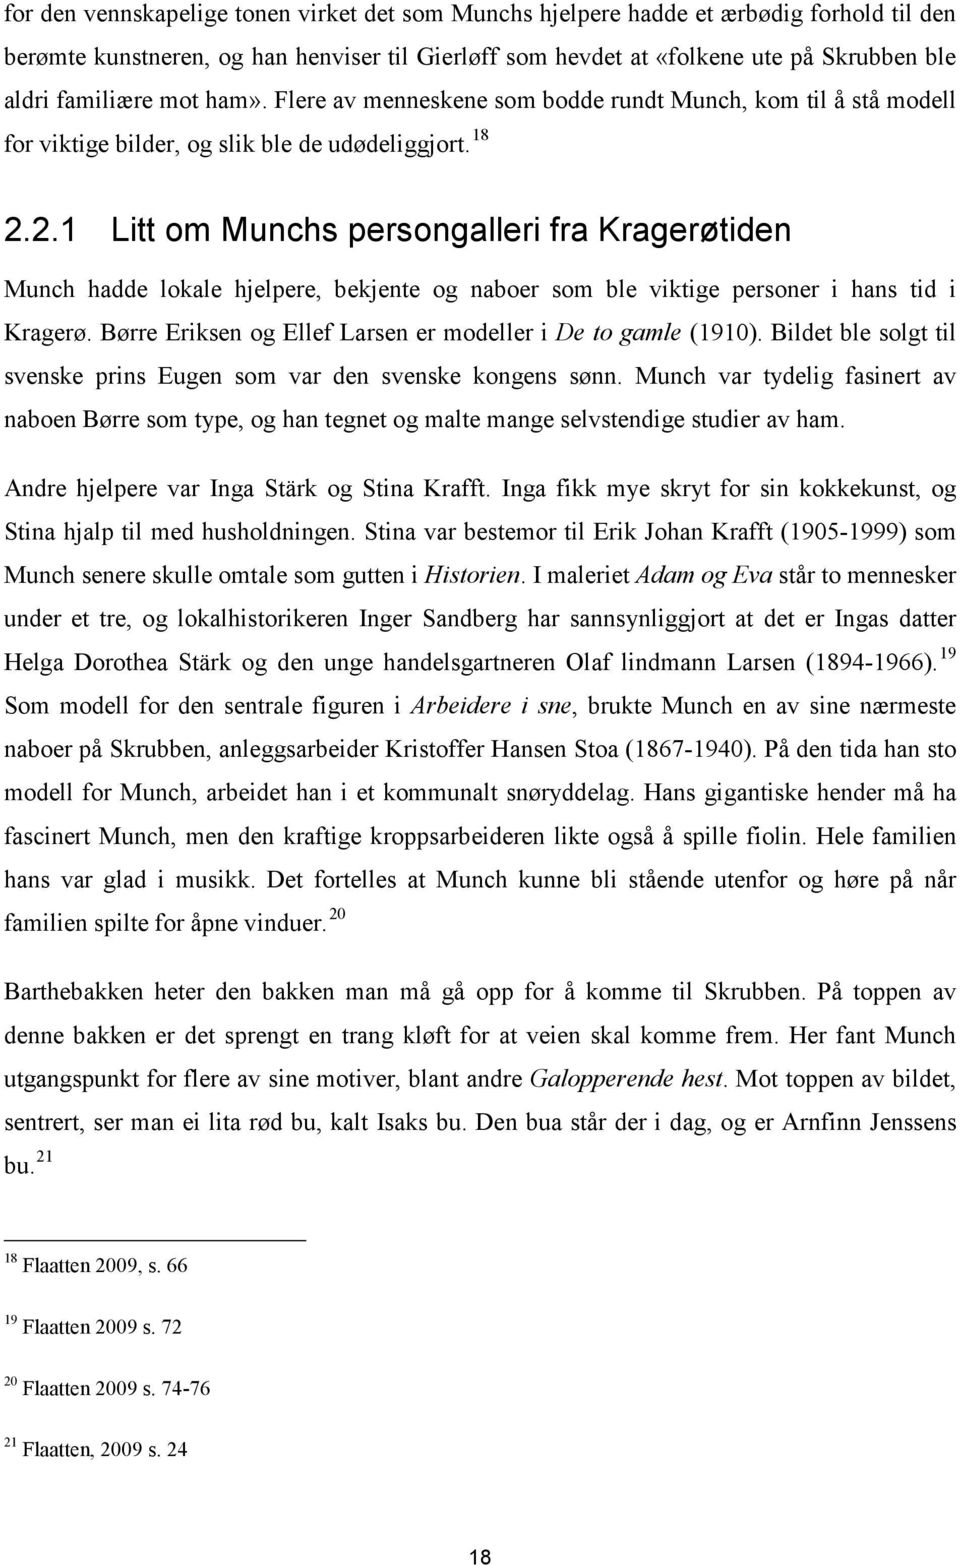 2.1 Litt om Munchs persongalleri fra Kragerøtiden Munch hadde lokale hjelpere, bekjente og naboer som ble viktige personer i hans tid i Kragerø.